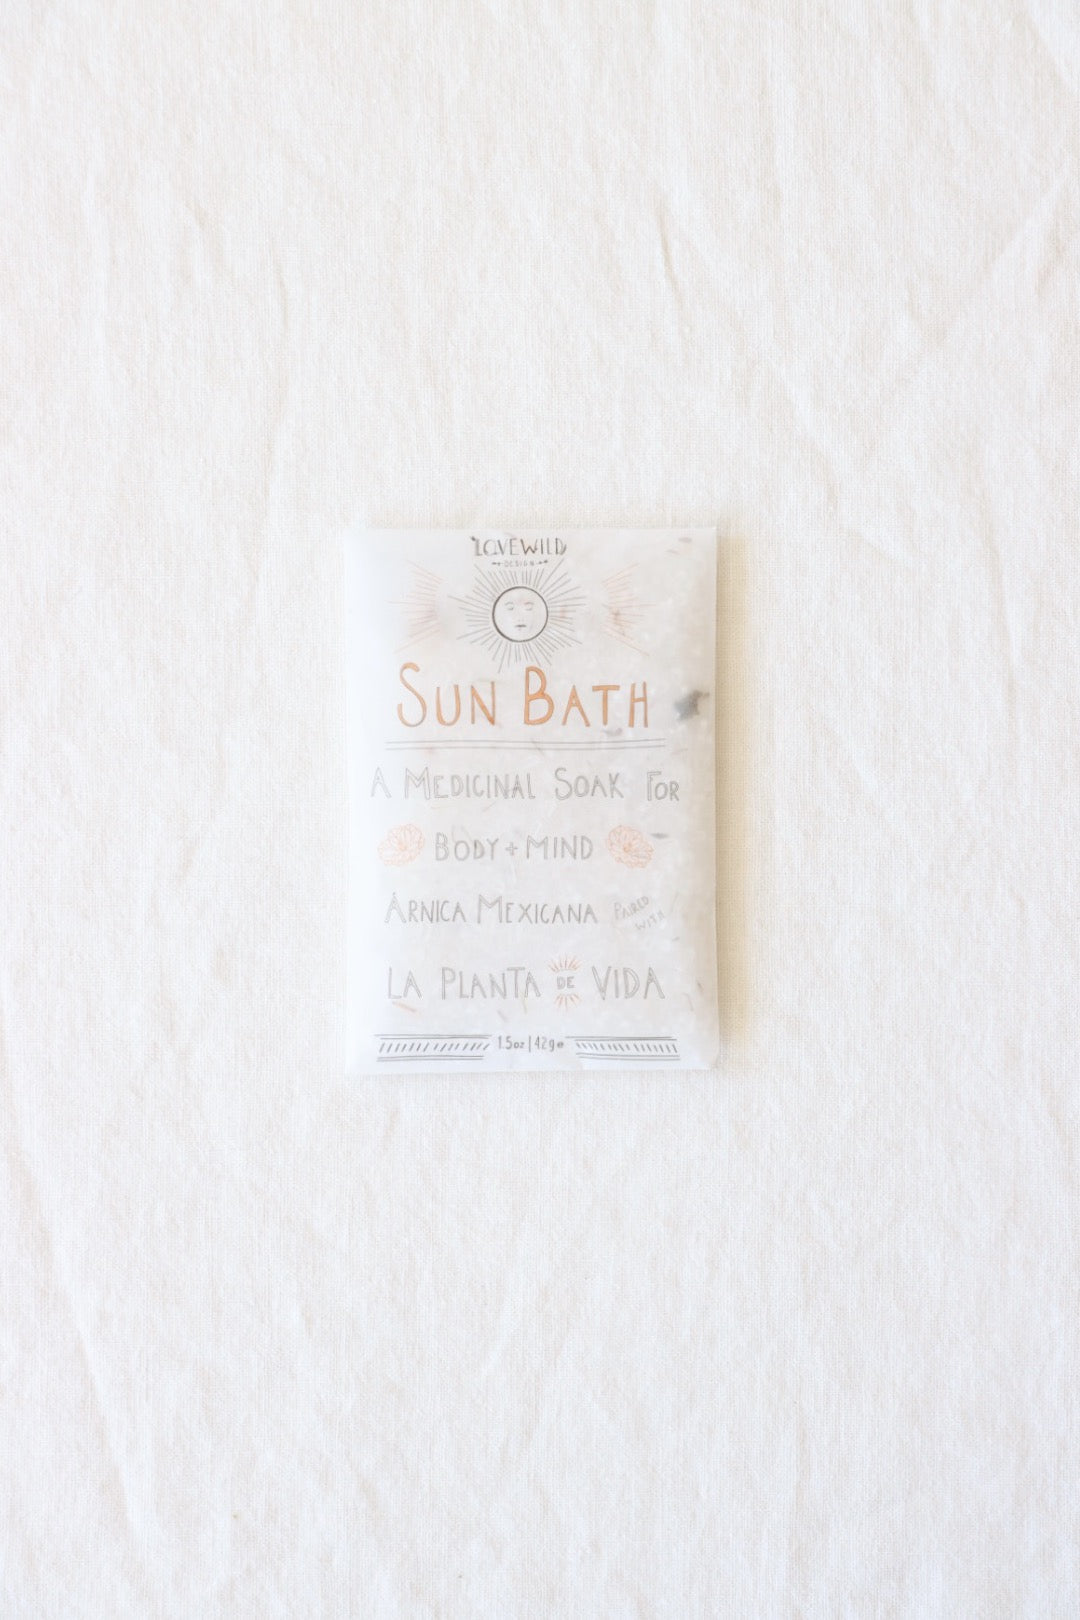 Sun Bath Soak